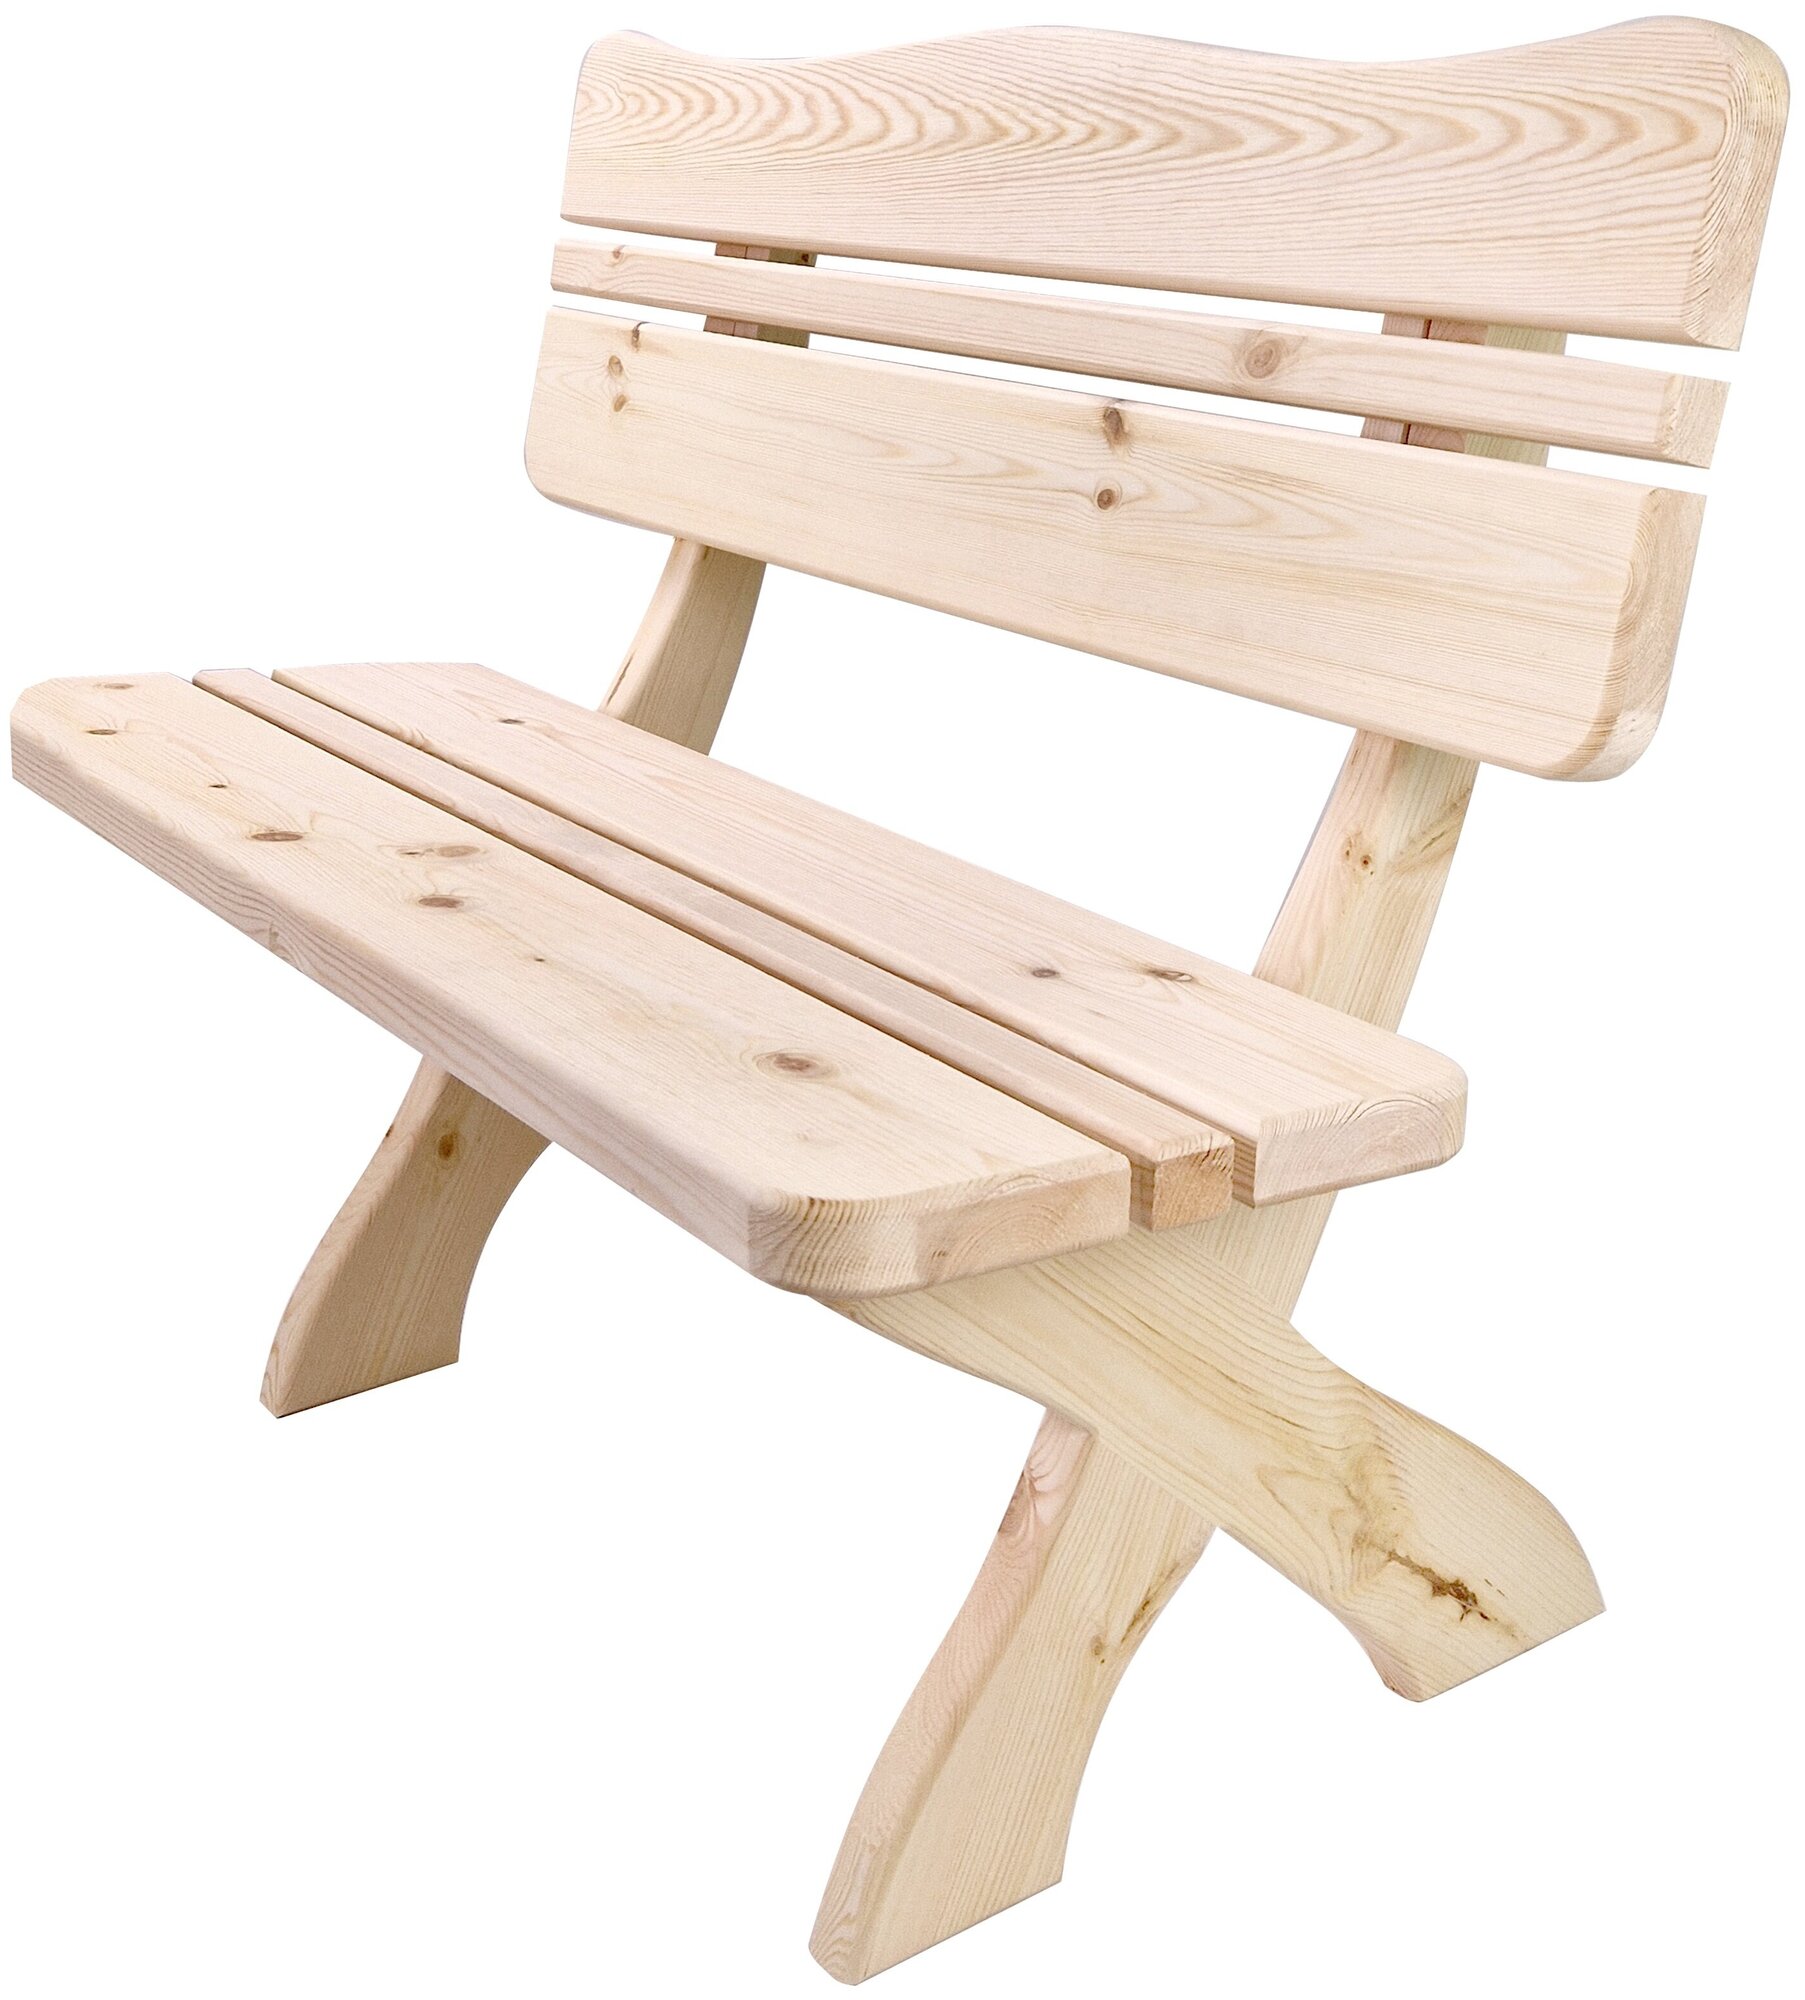 Скамейка со спинкой деревянная 12 метра из массива Вологодской сосны. Для сада / дома / бани /сауны